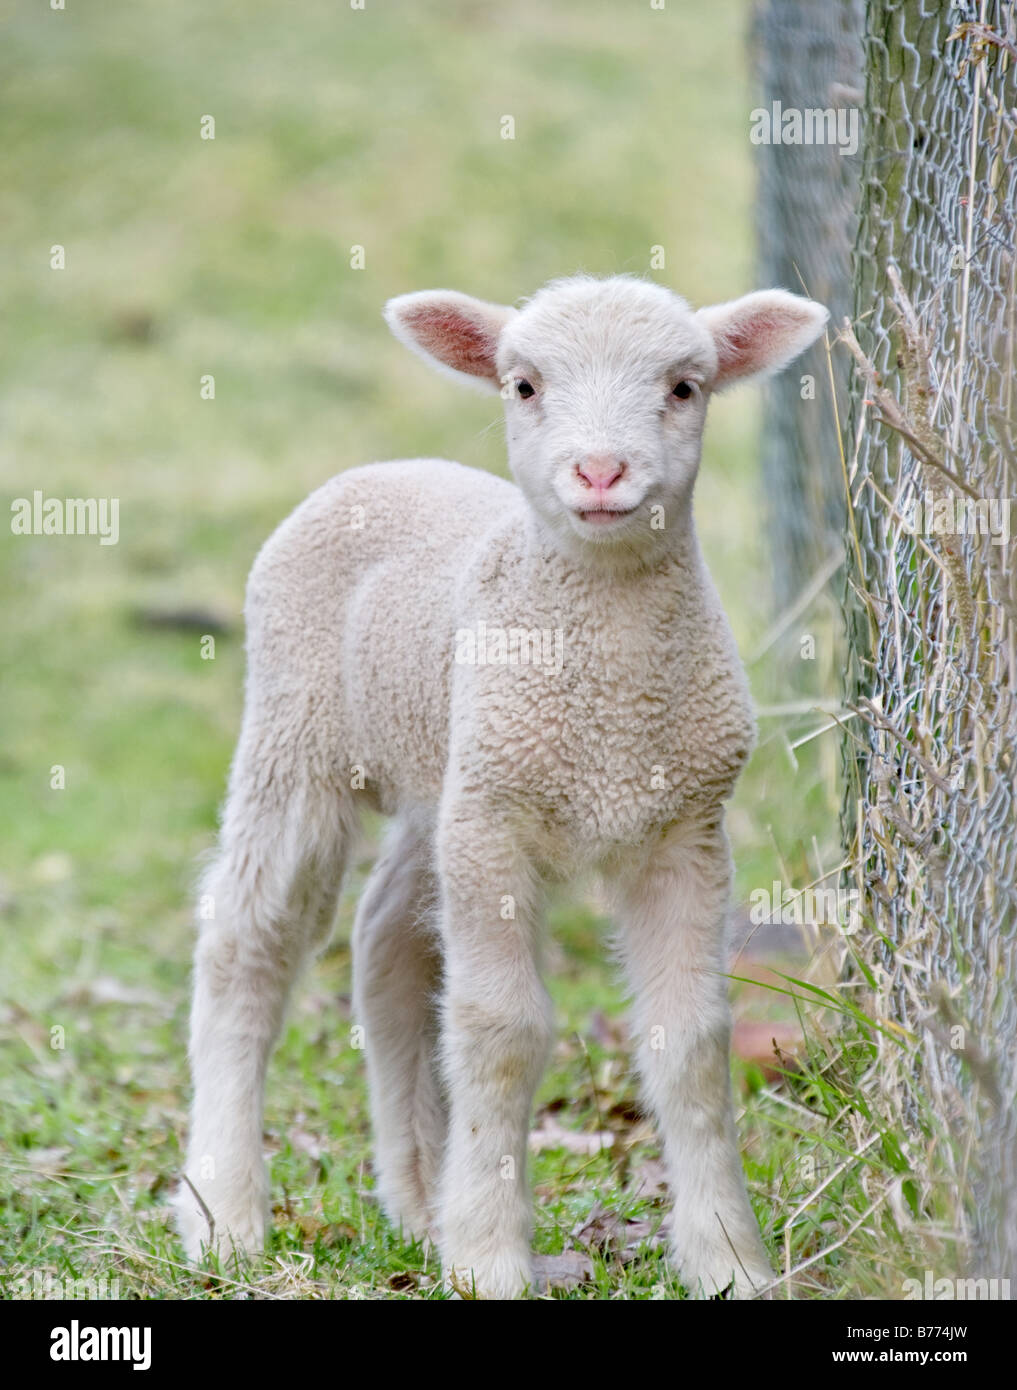 tolles Bild von einem niedlichen Baby Lamm auf dem Bauernhof Stockfoto